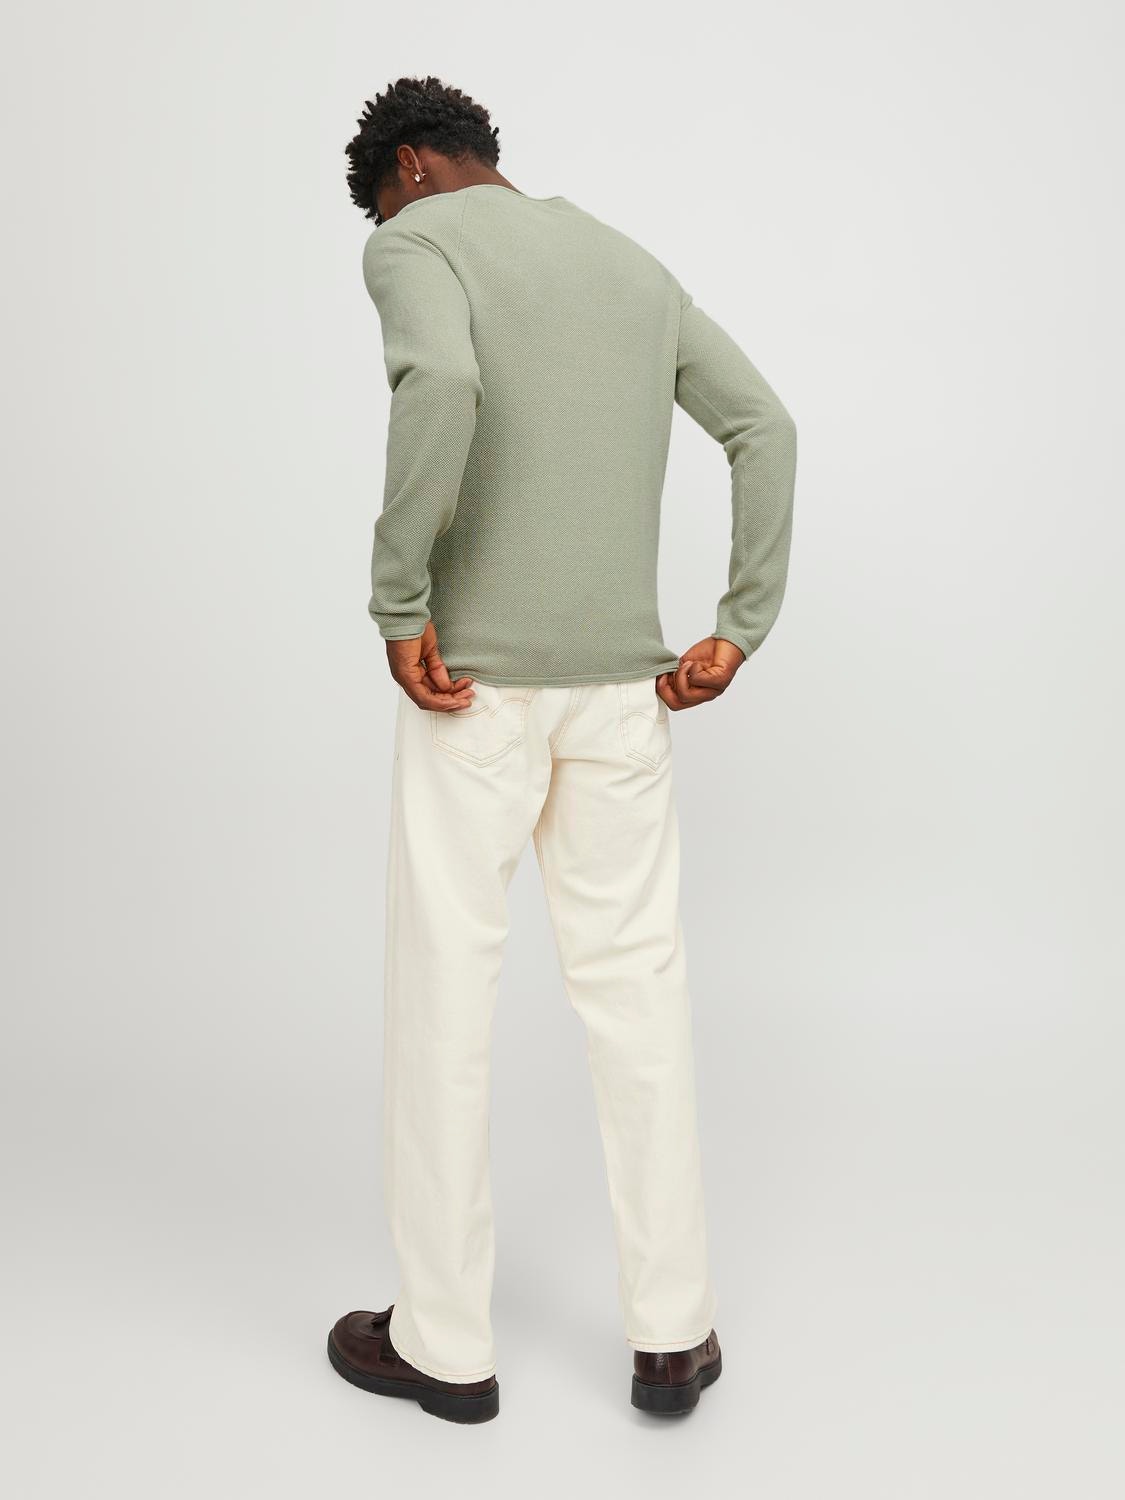 Jack & Jones Plain Knitted pullover -Desert Sage - 12157321